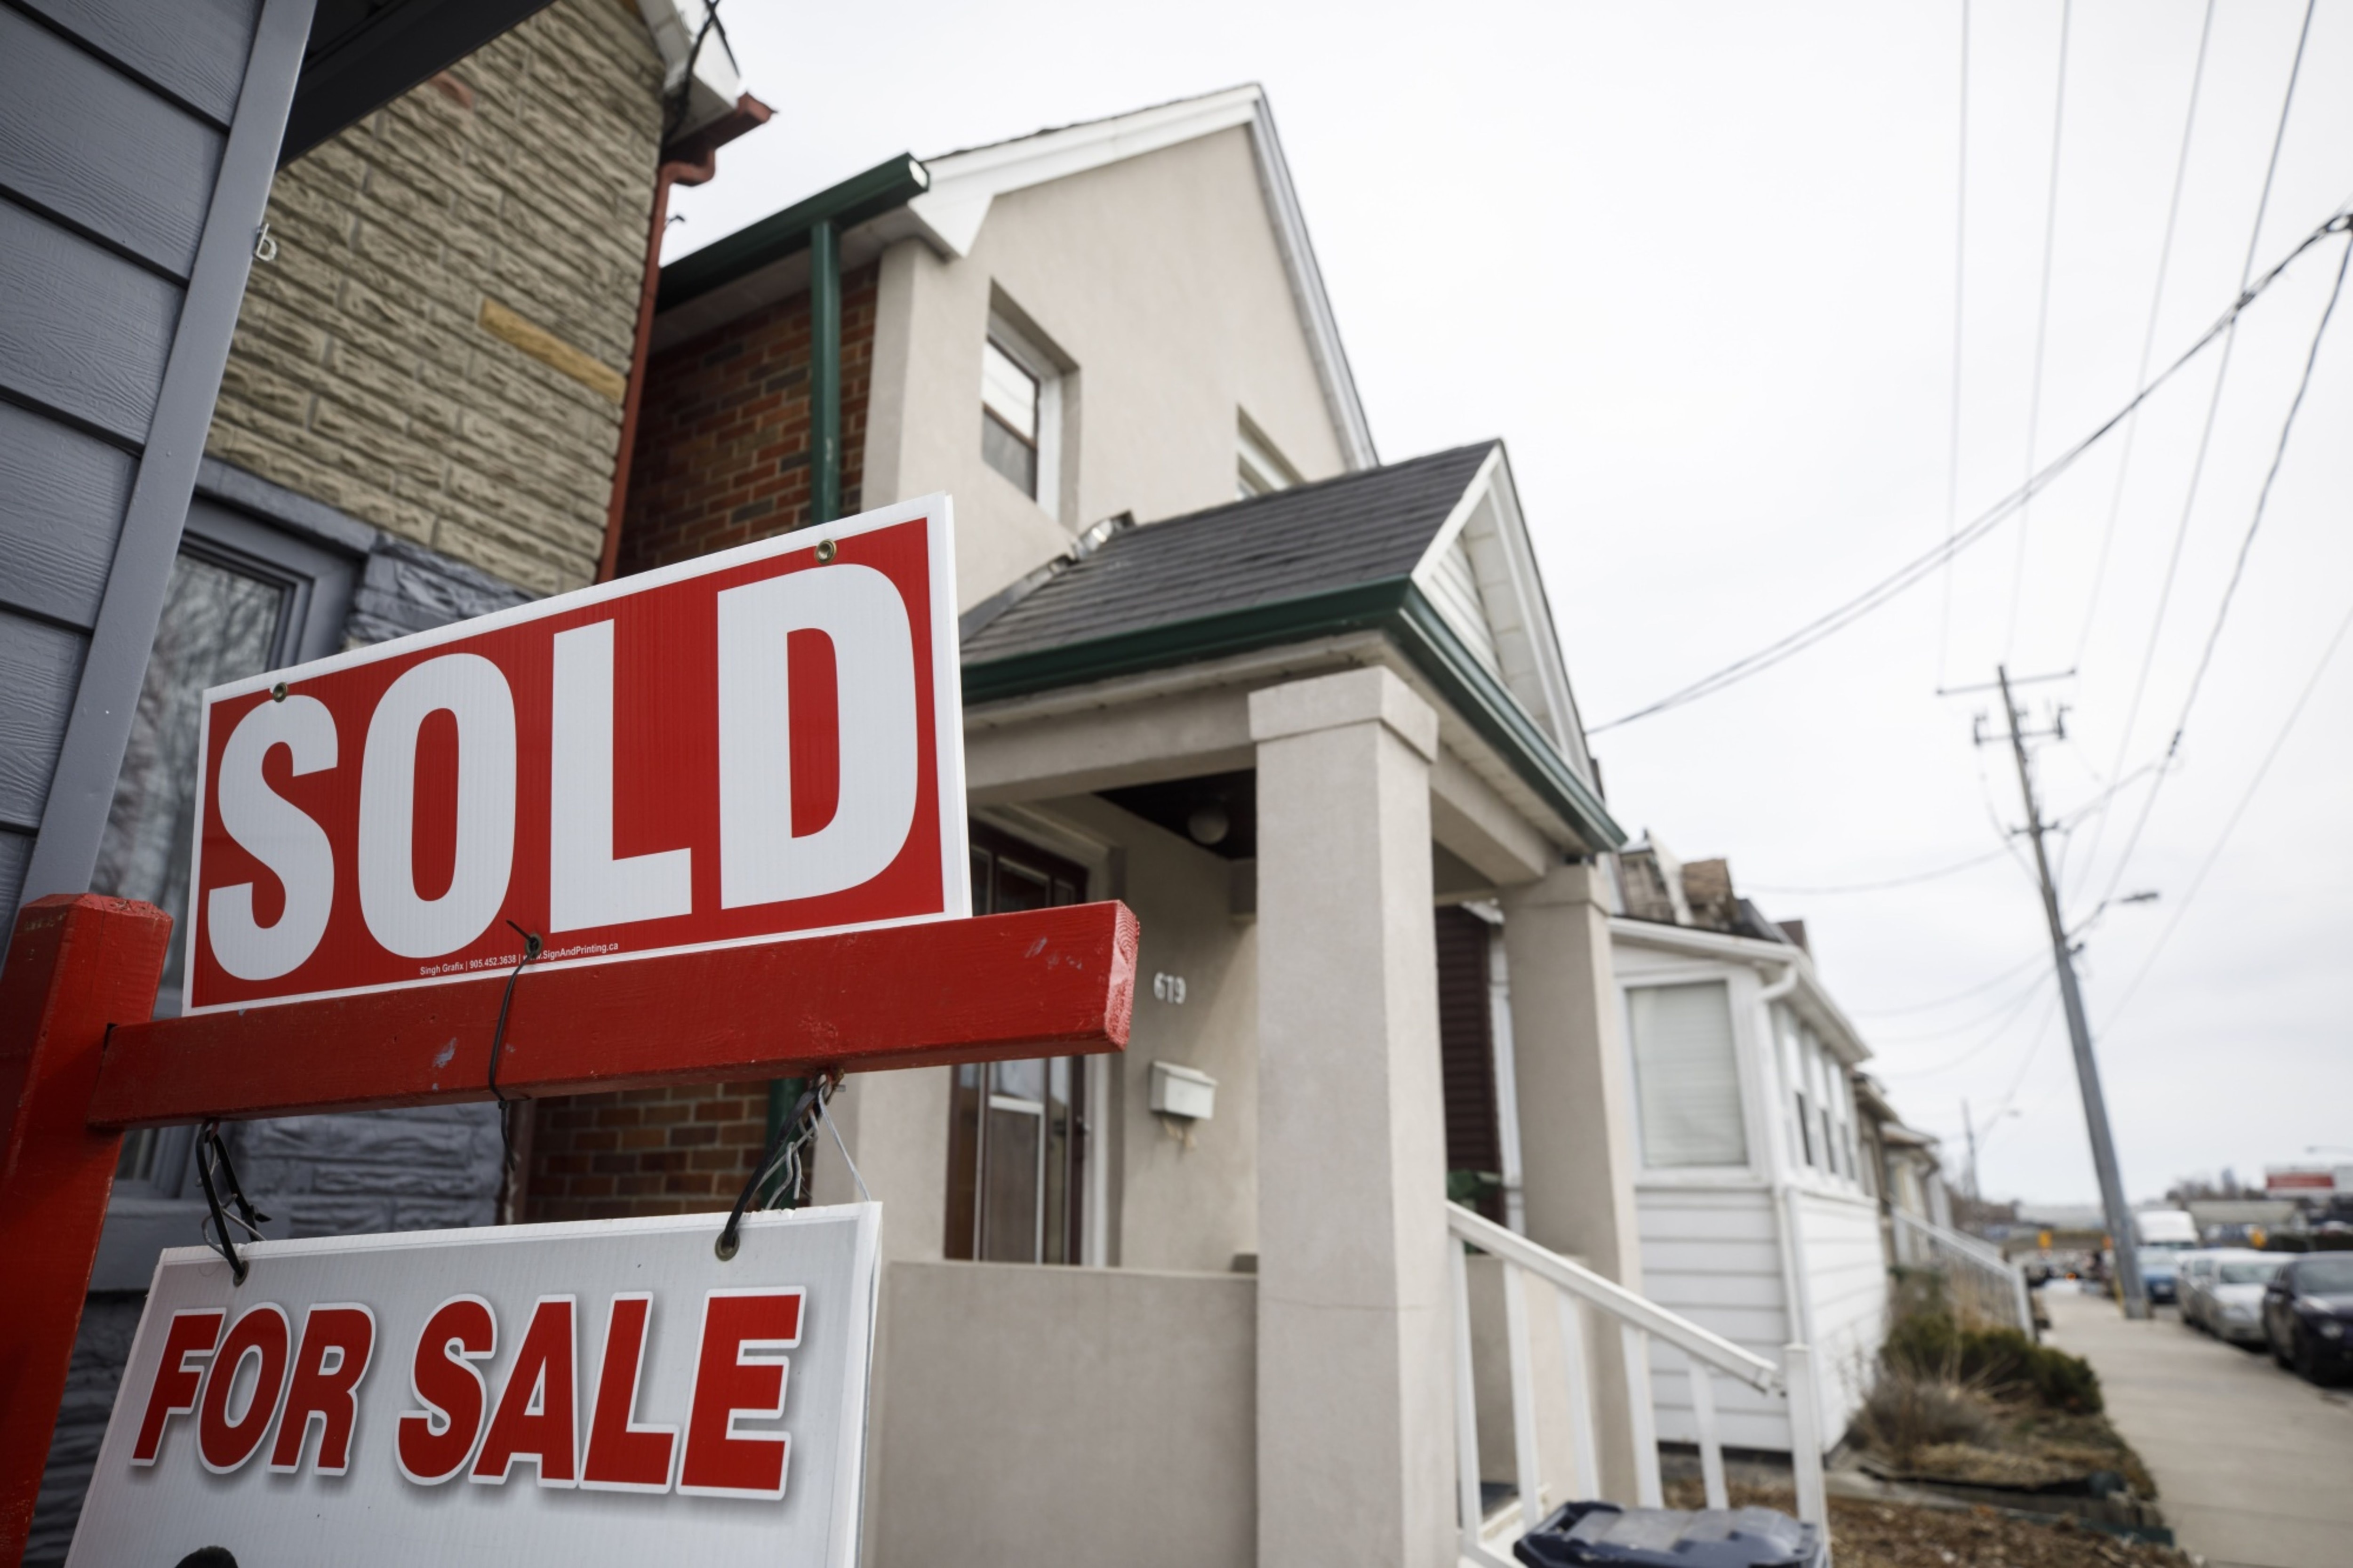 캐나다 토론토에  집이 팔렸다는 안내판이 내걸린 주택. 무섭게 치솟던 토론토 집값이 최근 하락세로 돌아섰다. /블룸버그.